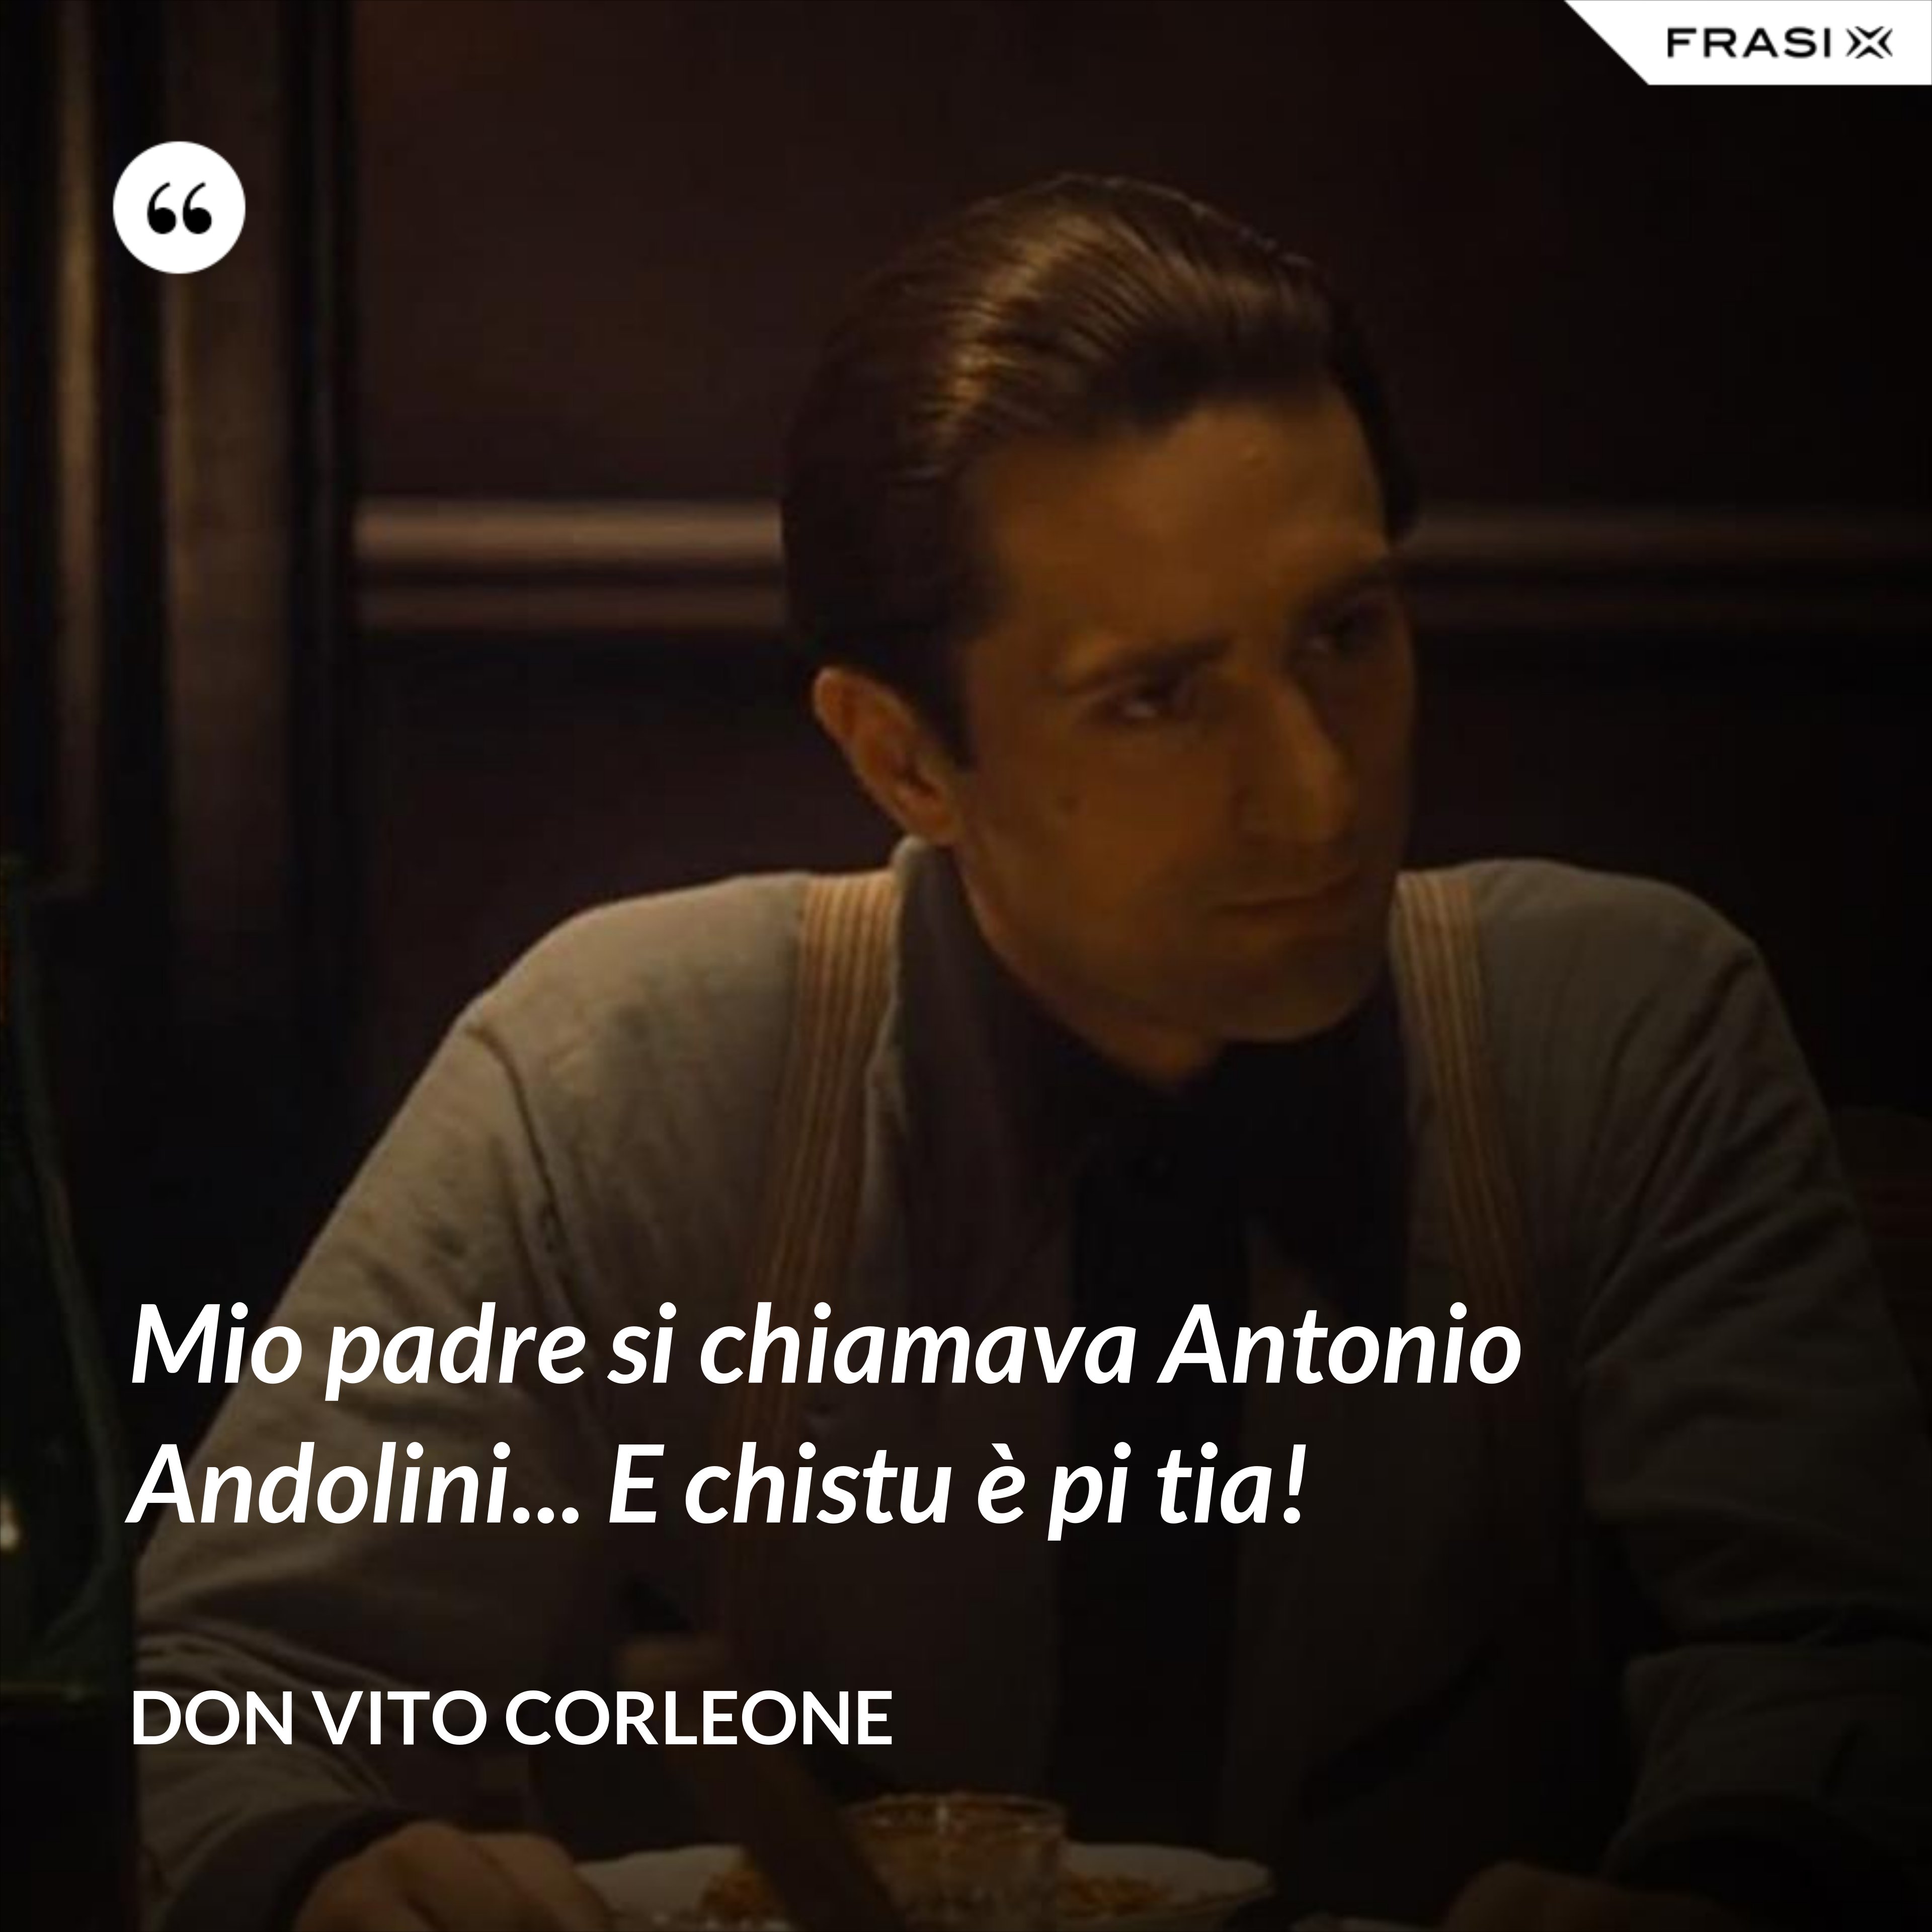 Mio padre si chiamava Antonio Andolini... E chistu è pi tia! - Don Vito Corleone